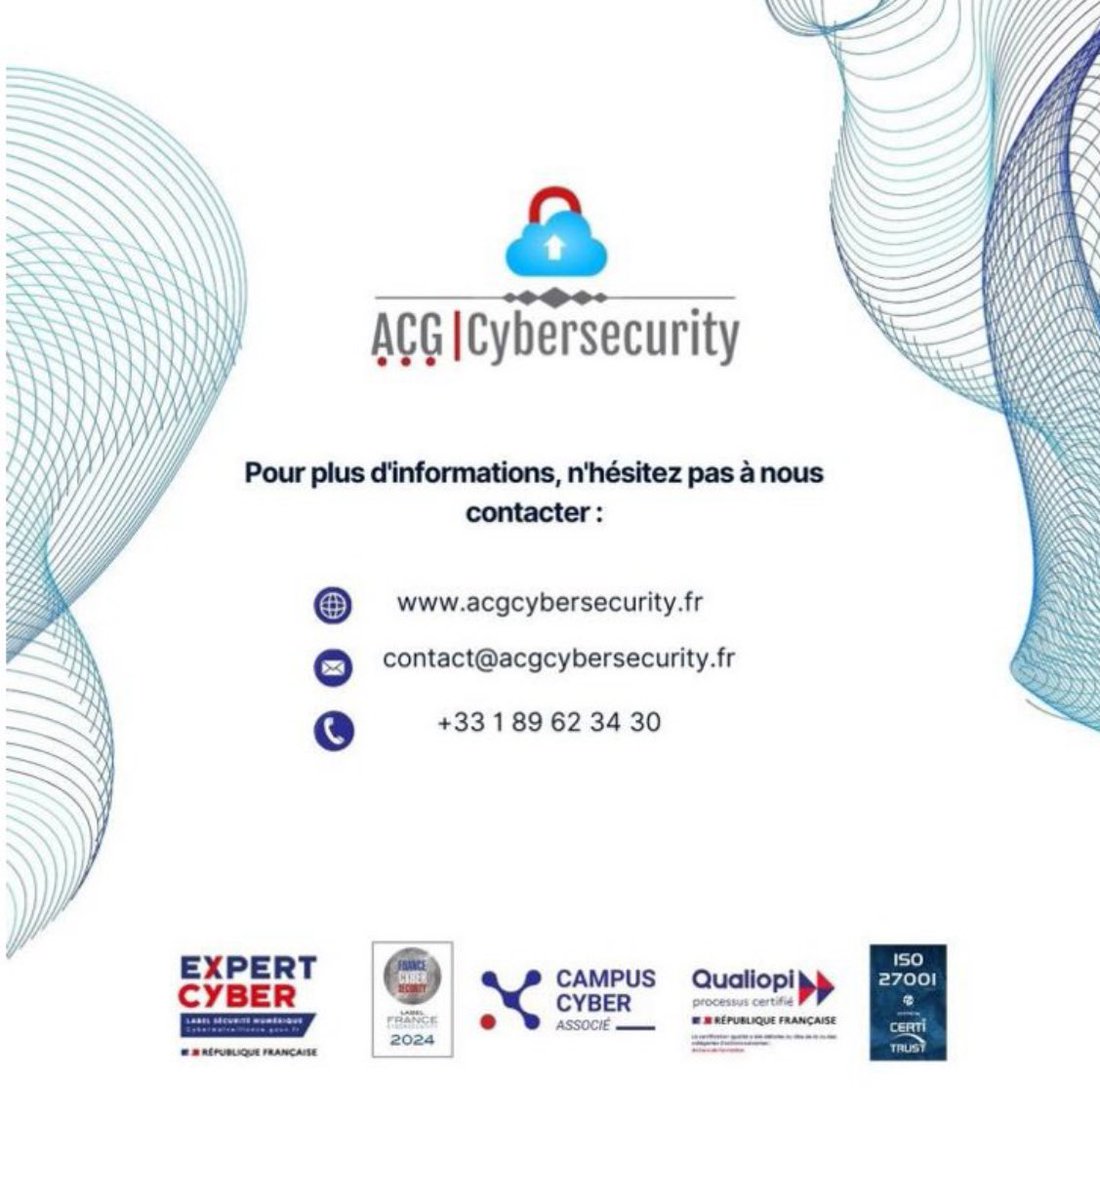 Ne manquez pas nos formations certifiantes ISACA ! 
Les formations #CISA, #CISM, #CRISC sont disponibles en France, et délivrées par ACG Cybersecurity, pure player de la Cybersécurité